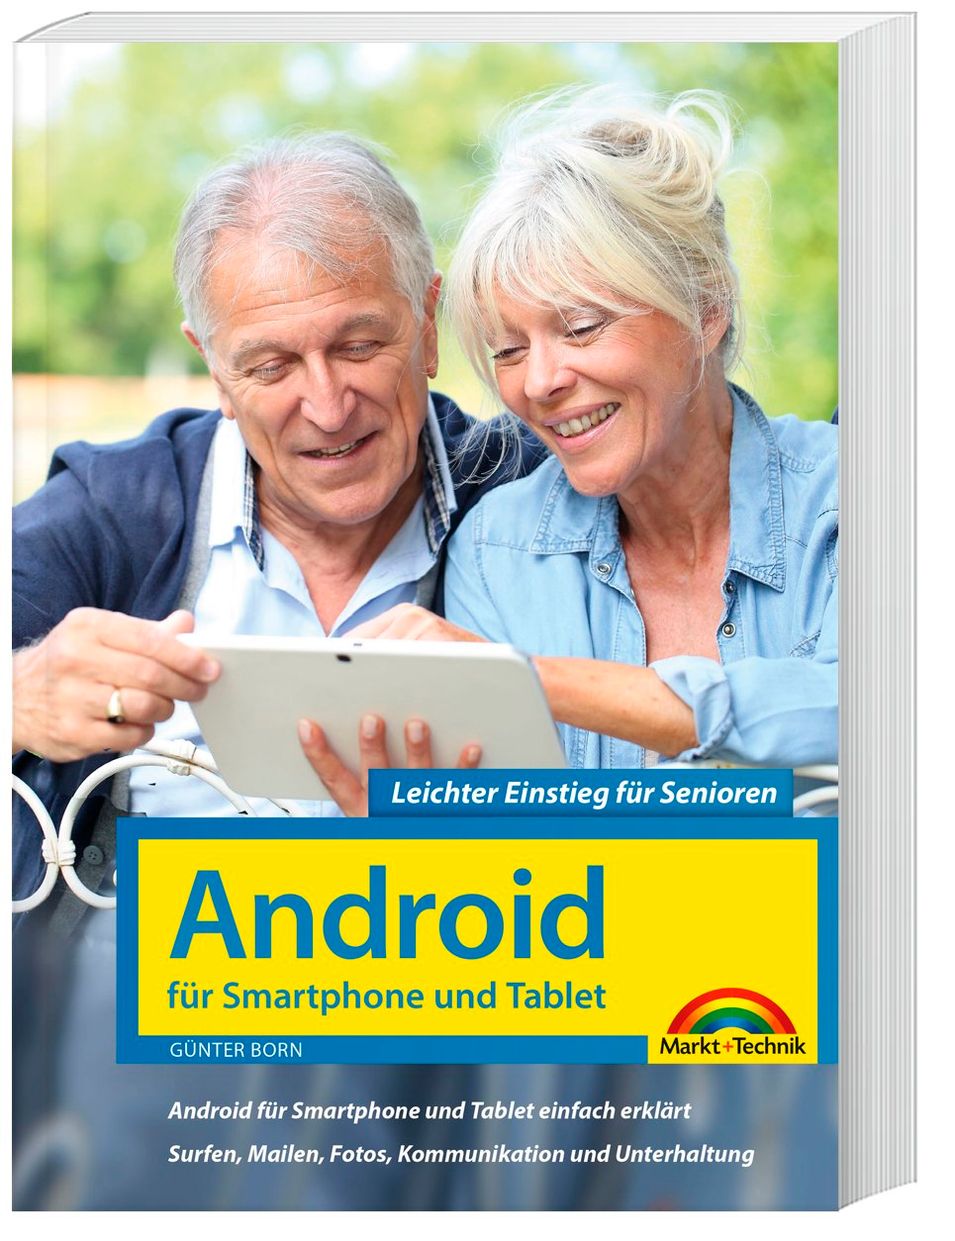 Android für Smartphones und Tablets - Leichter Einstieg für Senioren Buch